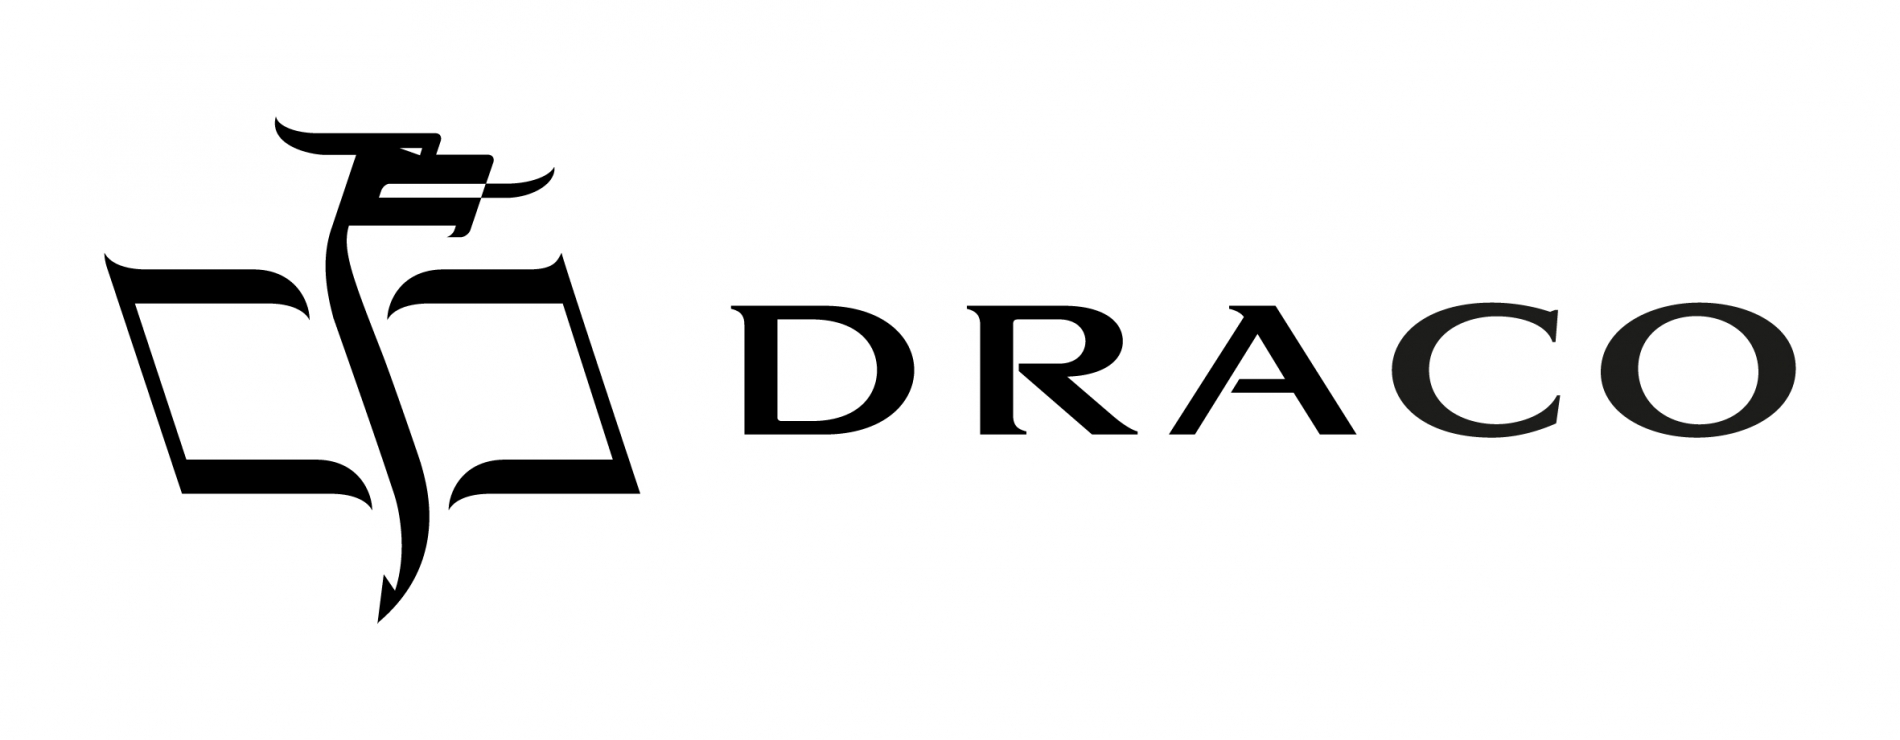 logo_draco_rgb-01.jpg